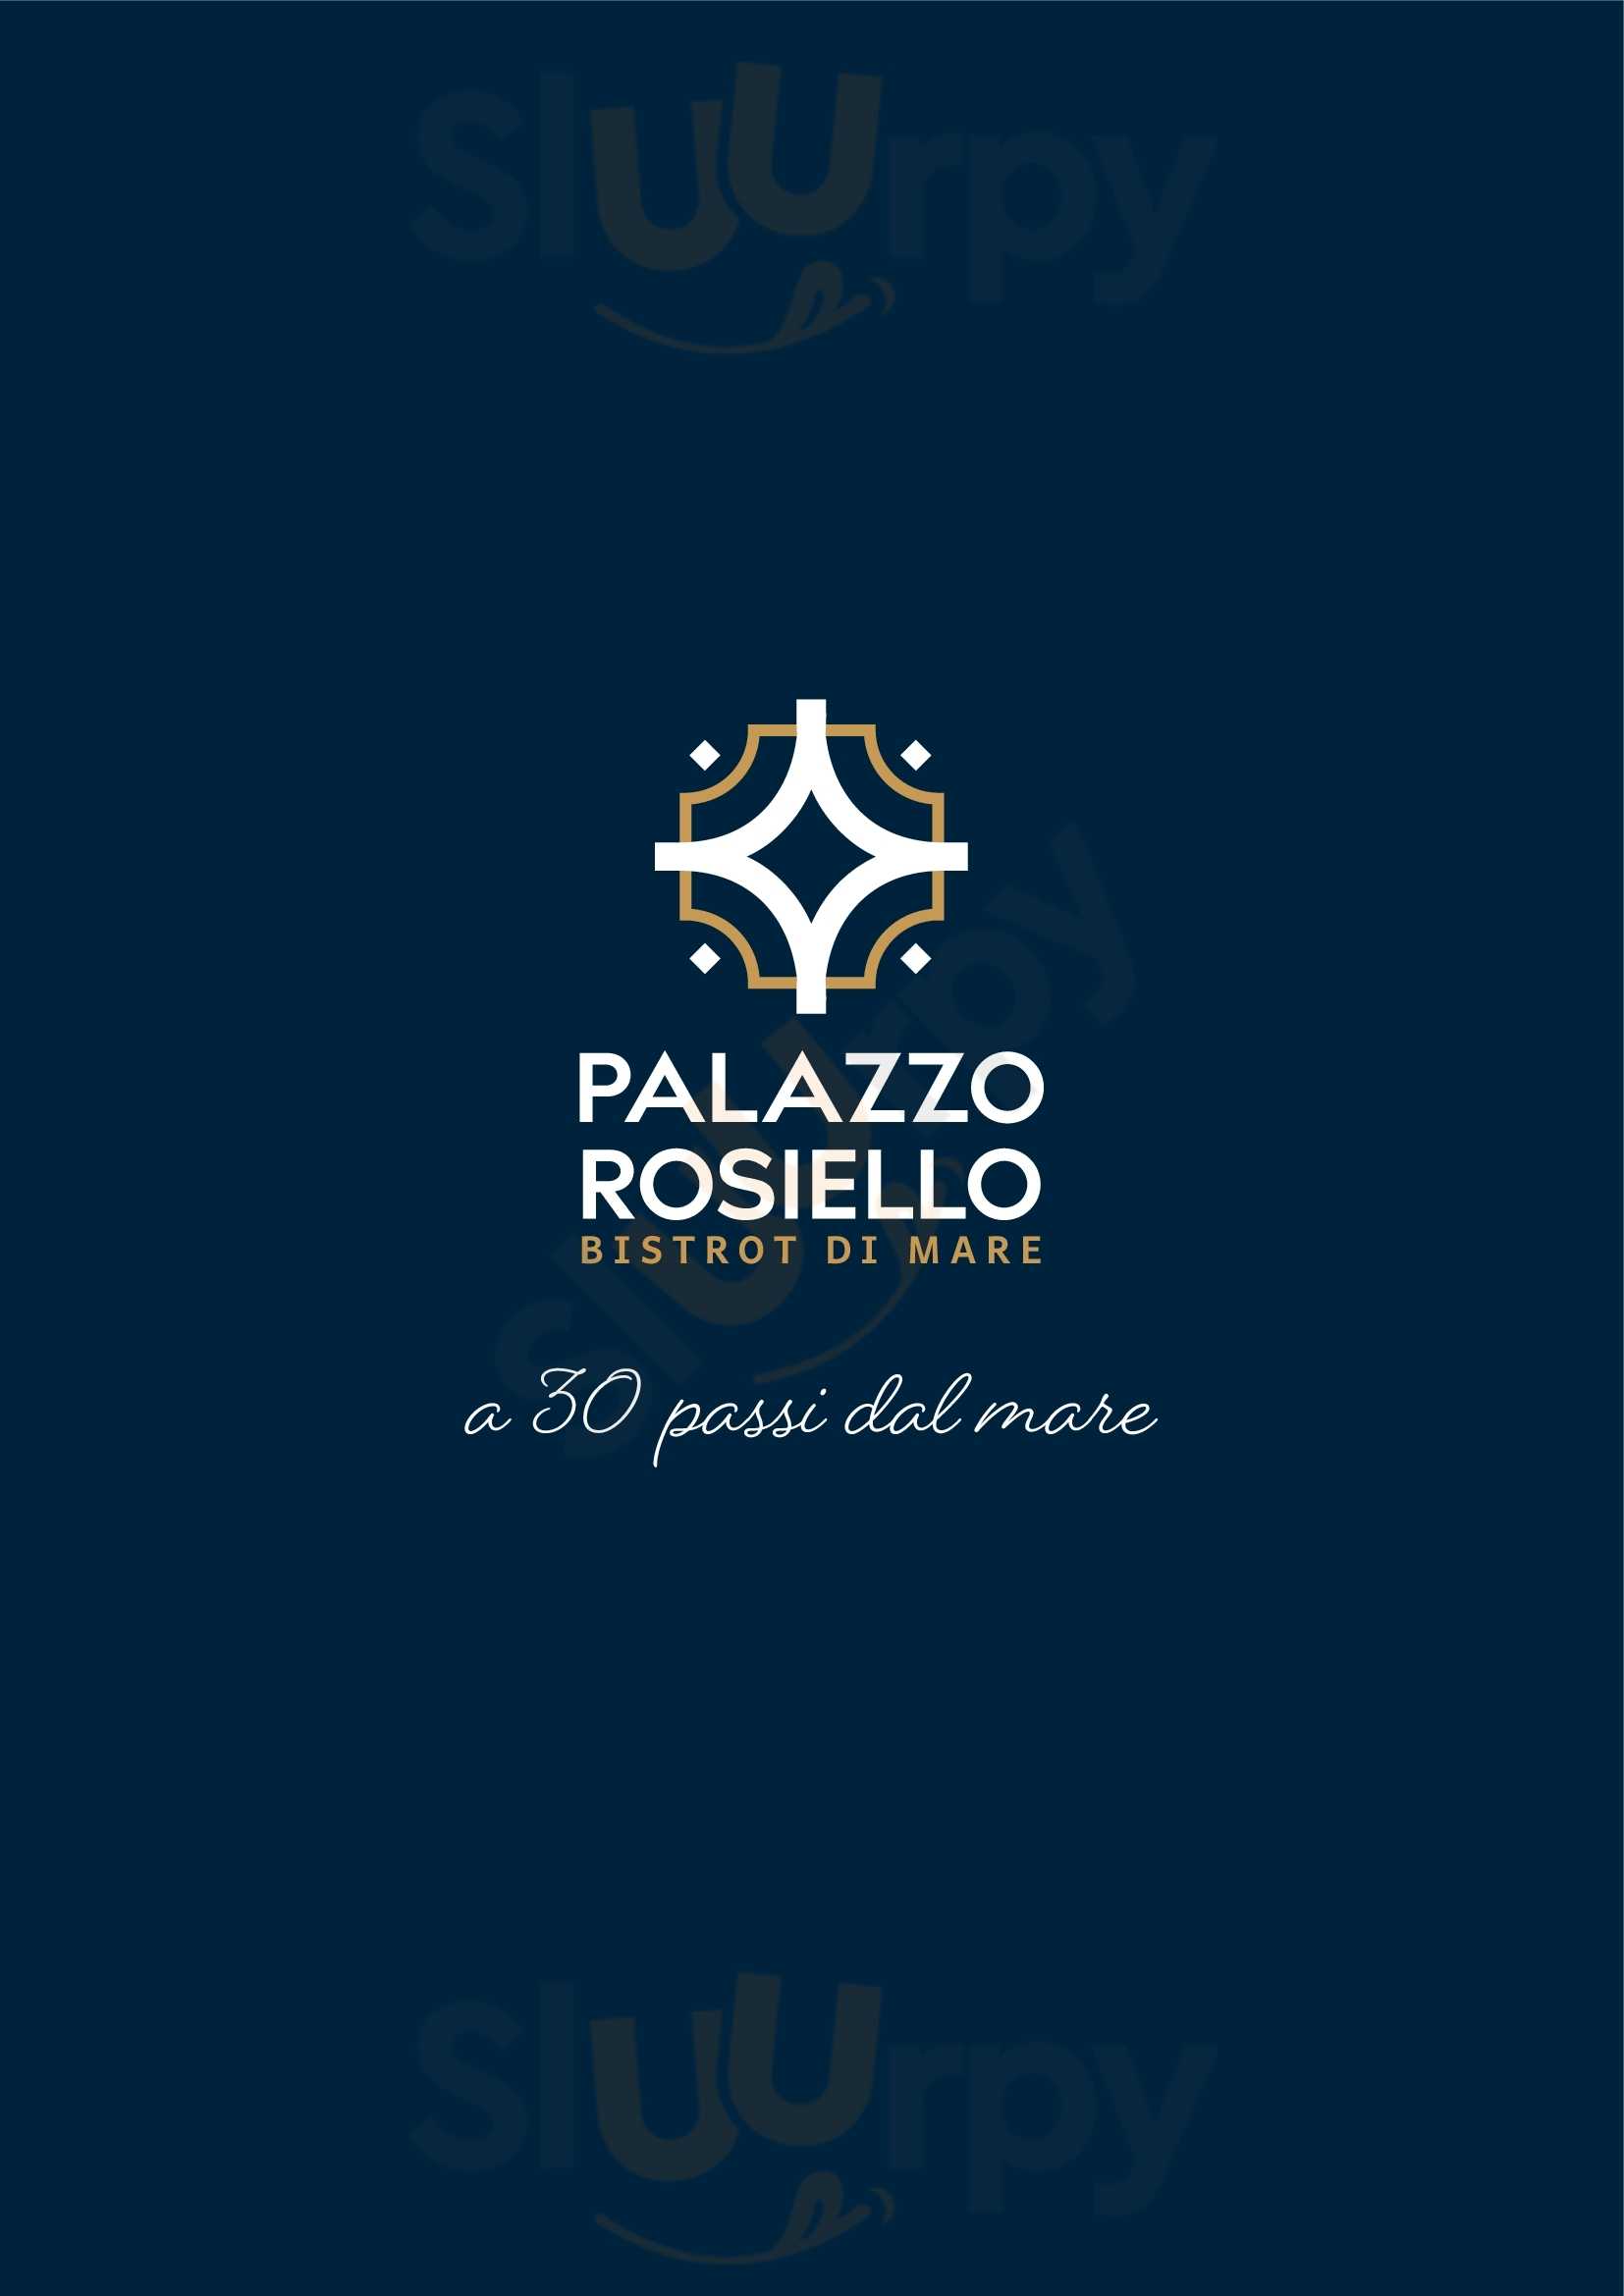 Palazzo Rosiello - Bistrot di Mare Santa Maria di Castellabate menù 1 pagina